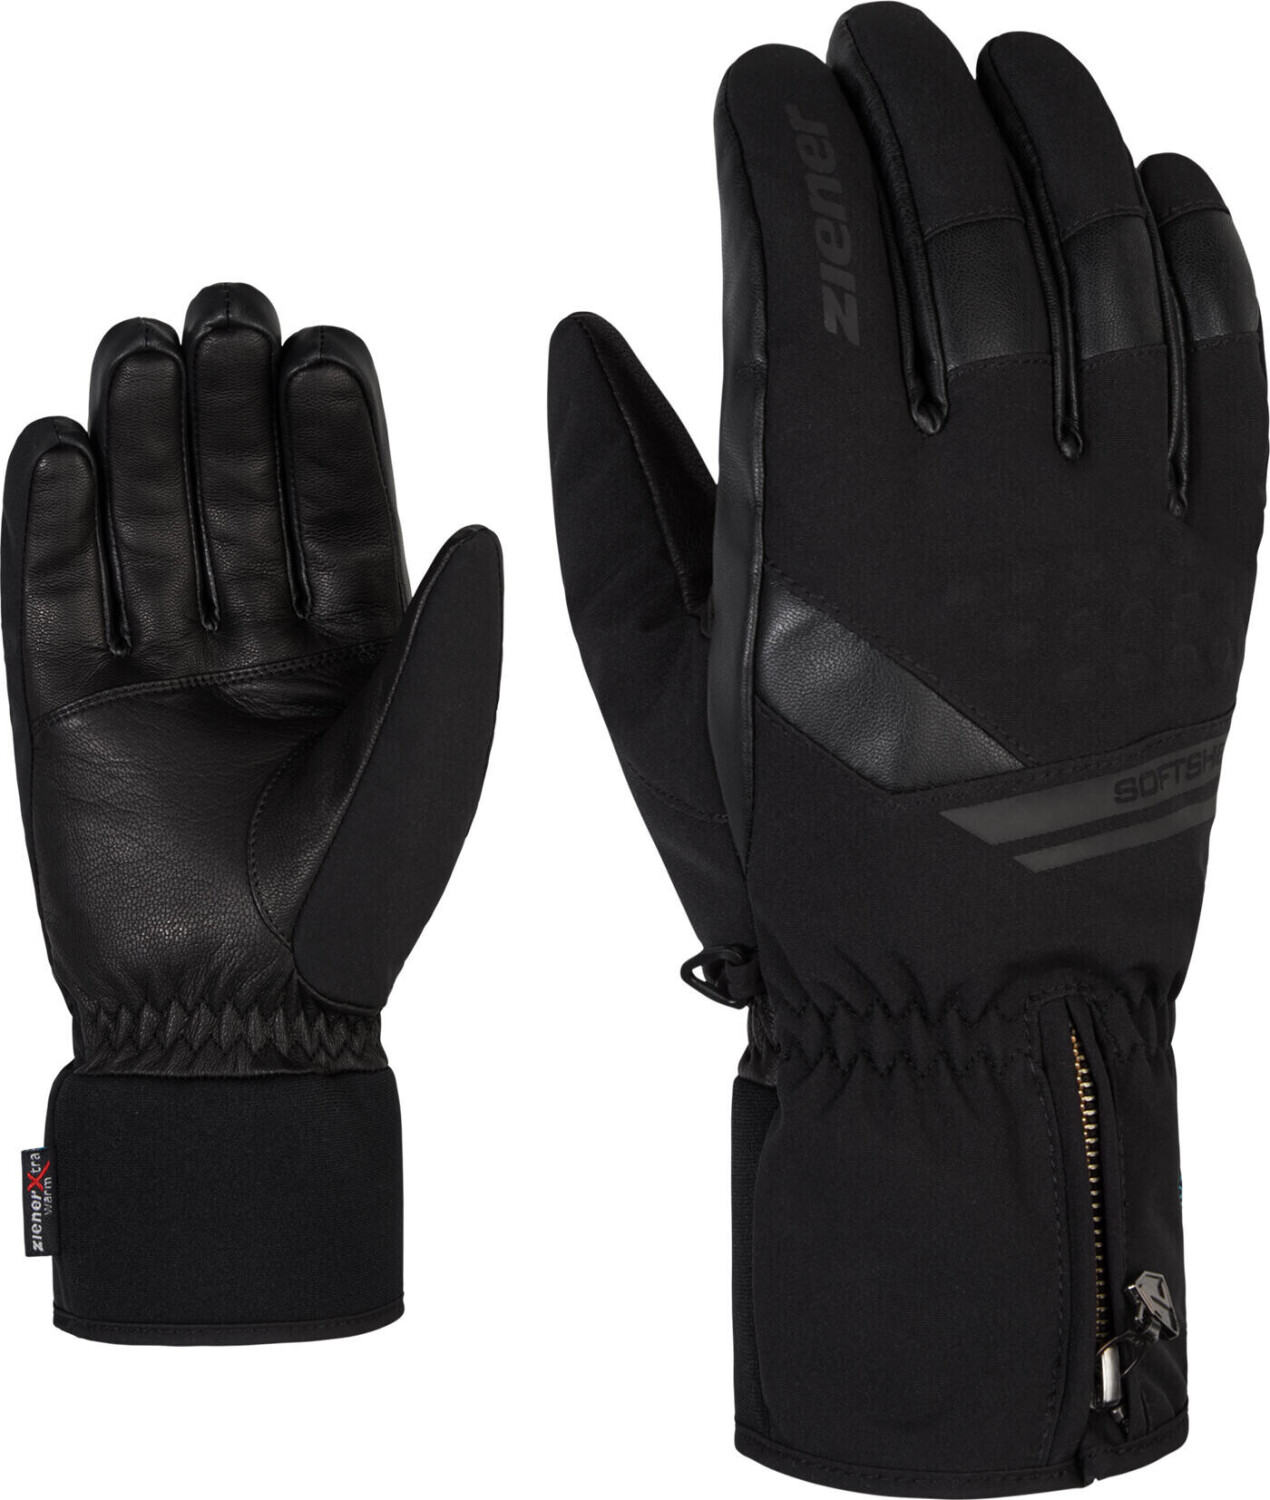 Ziener Goman ASR PR Glove Ski Alpine (801080) black ab 53,59 € |  Preisvergleich bei